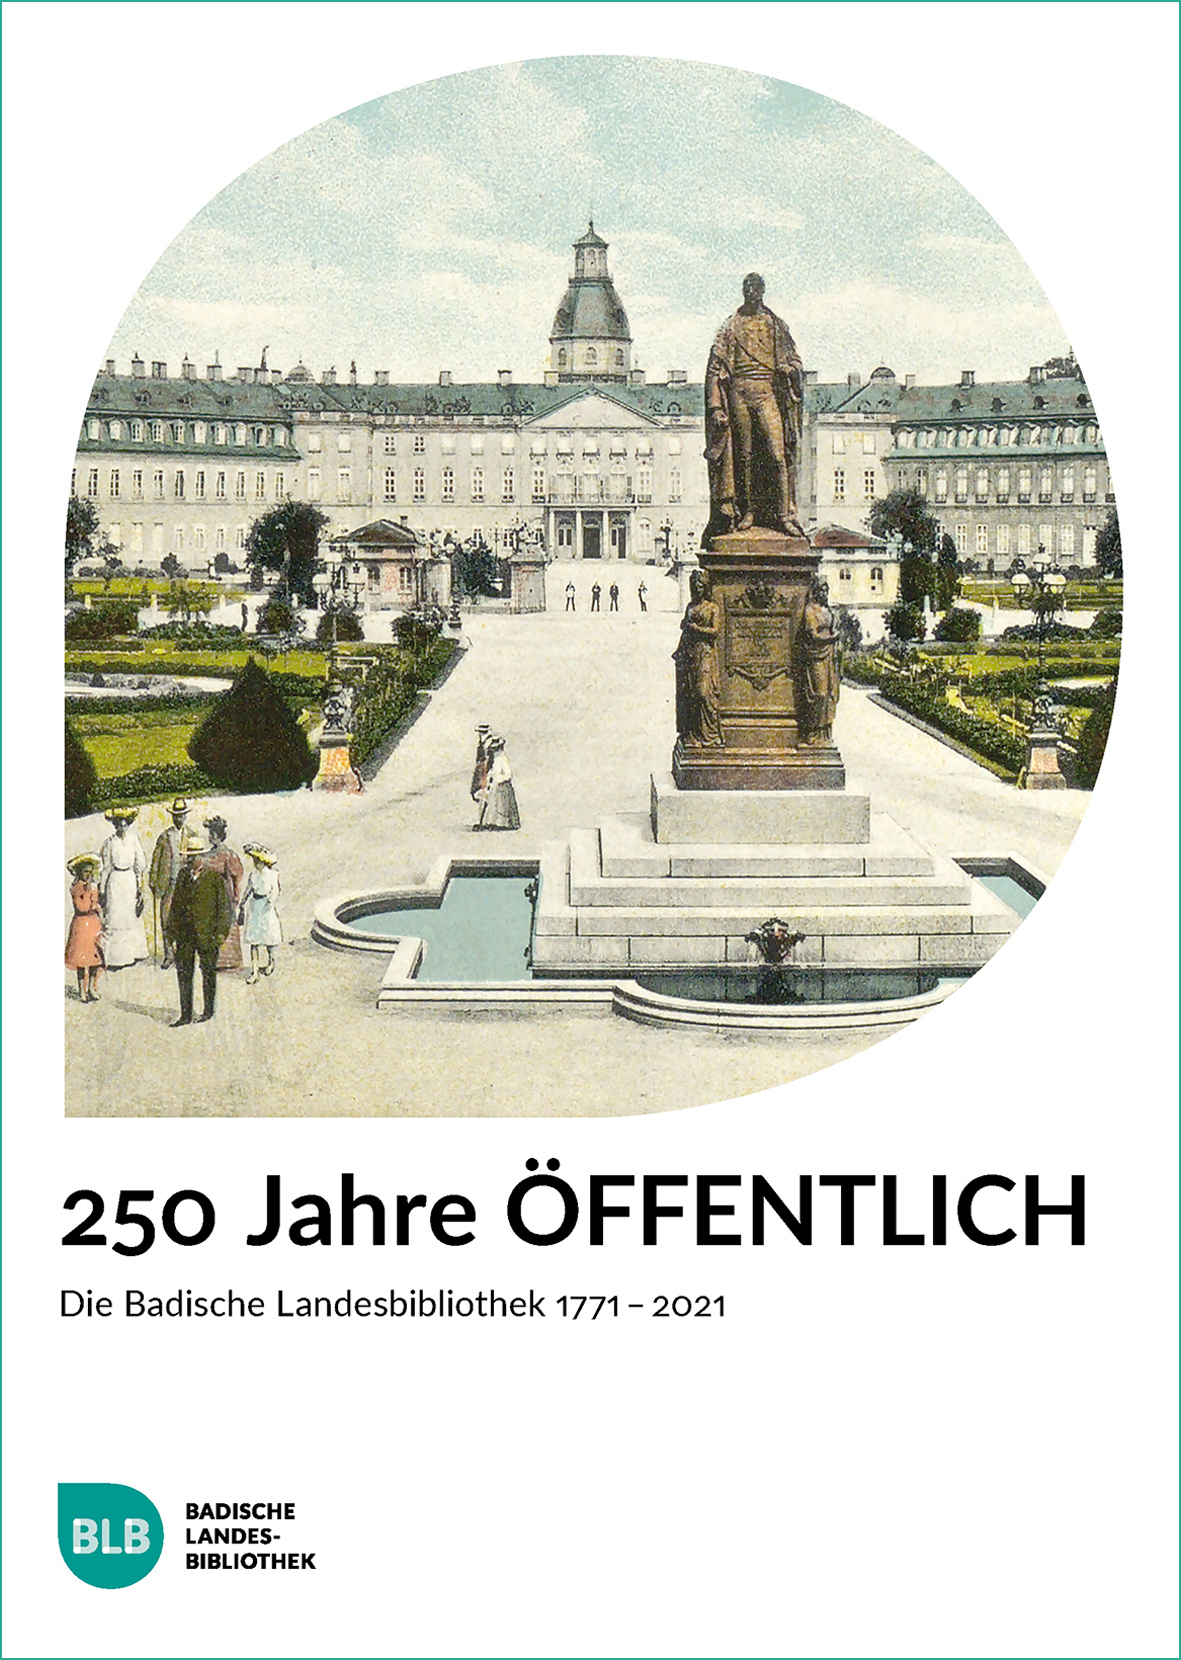 Zu sehen ist das Buchcover der Publikation "250 JAHRE ÖFFENTLICH". Darauf zu sehen ist eine historische Ansicht des Schlosses Karlsruhe mit vorgelagertem Parkbereich. 